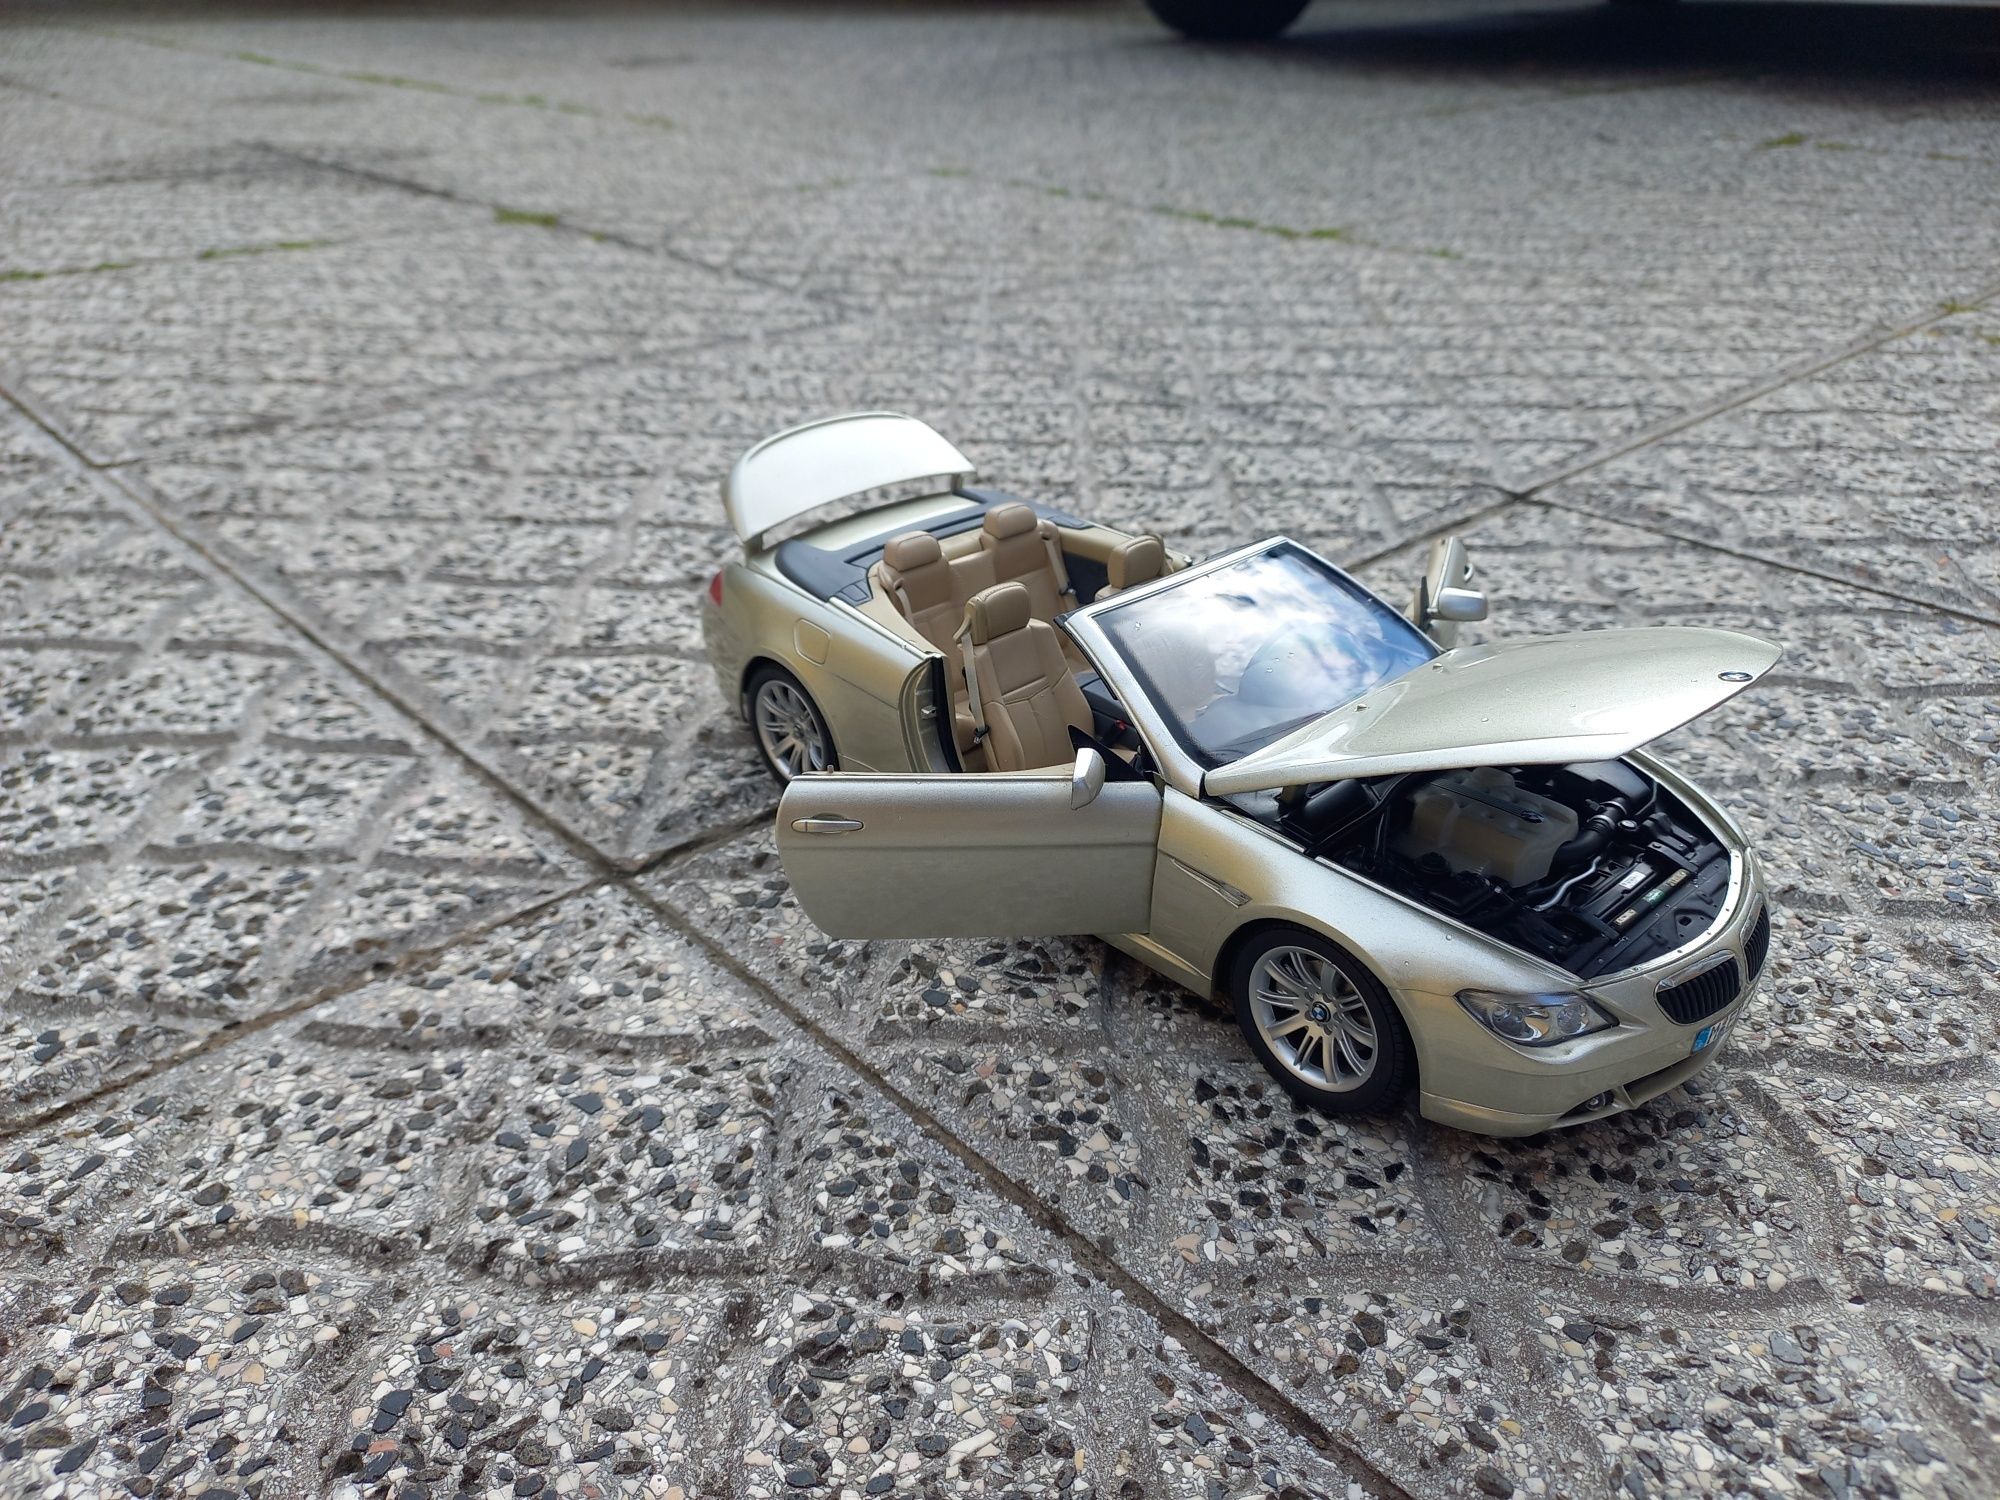 Brinquedo - Carro - BMW - à escala